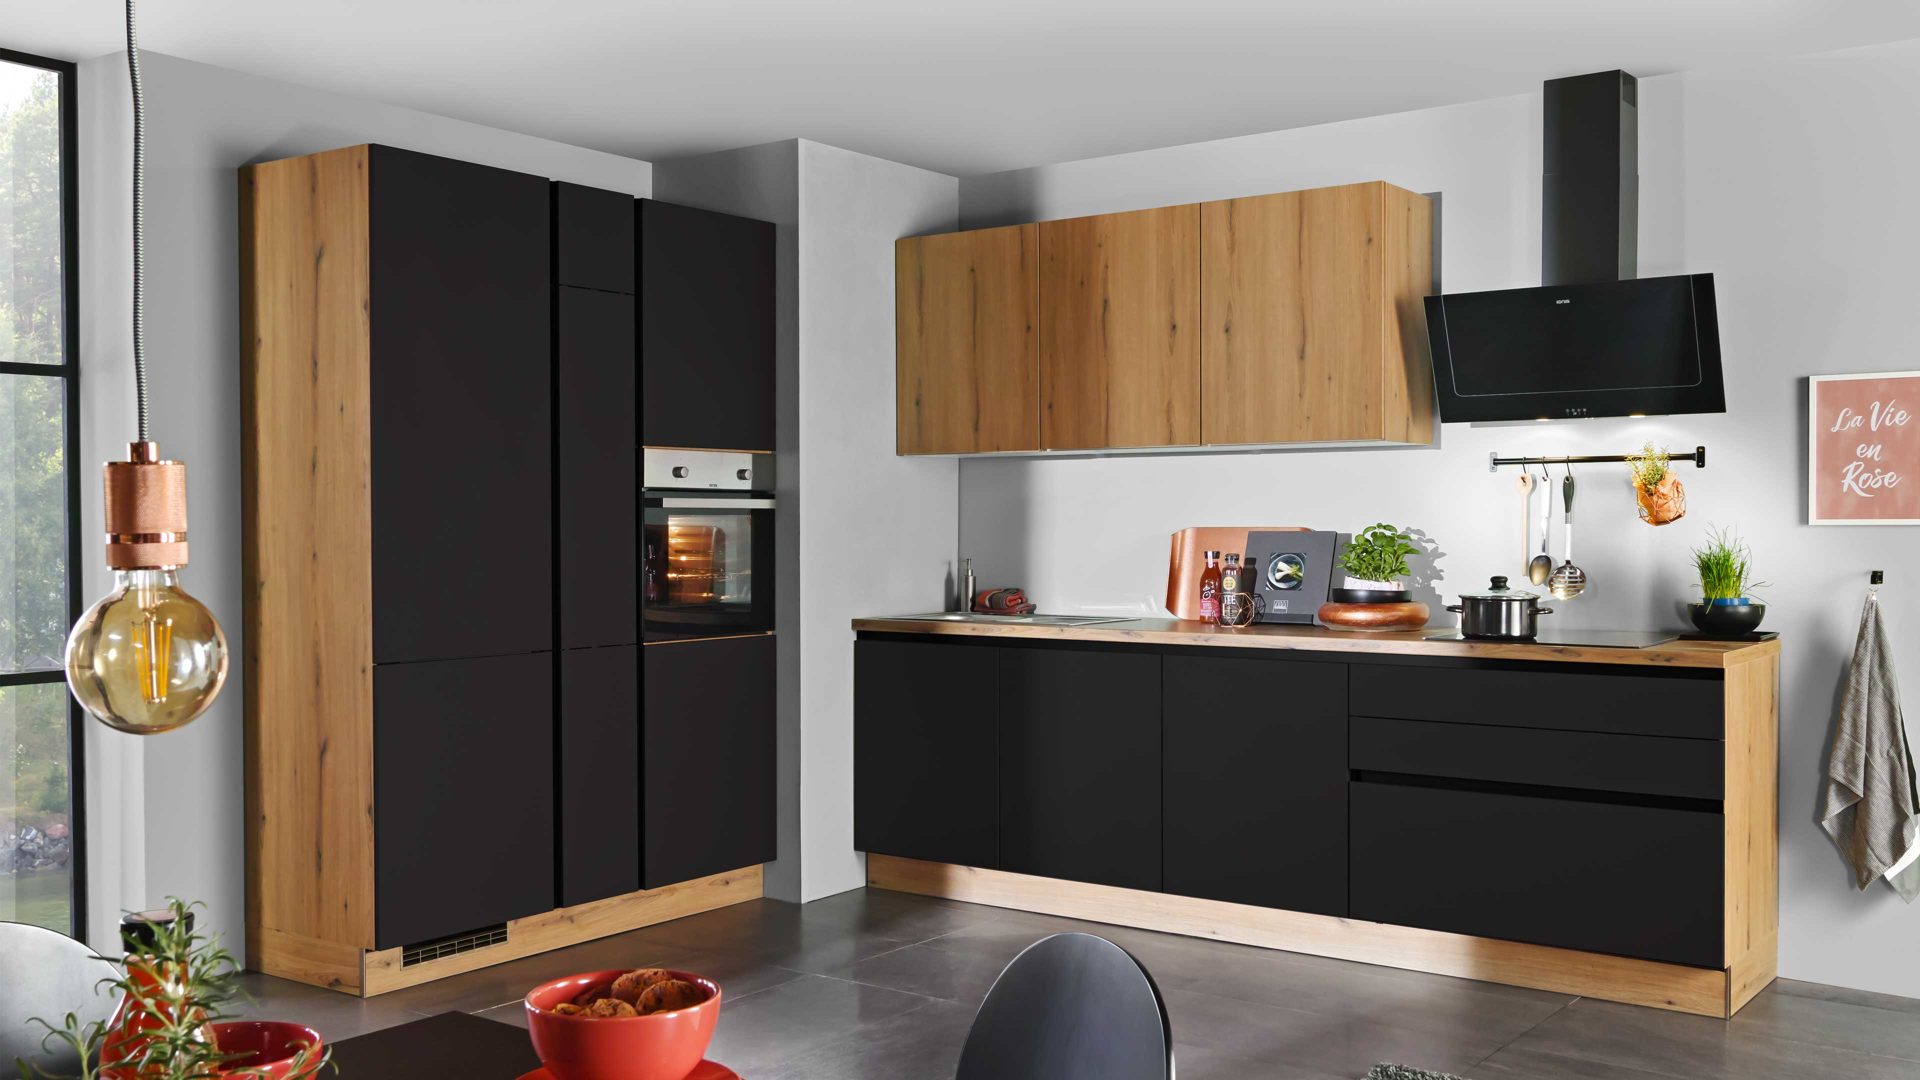 Einbauküche Express küchen aus Holz in Schwarz EXPRESS KÜCHEN Einbauküche Clean mit IGNIS Einbaugeräten Mattschwarz & Eiche astig - Länge ca. 433 cm